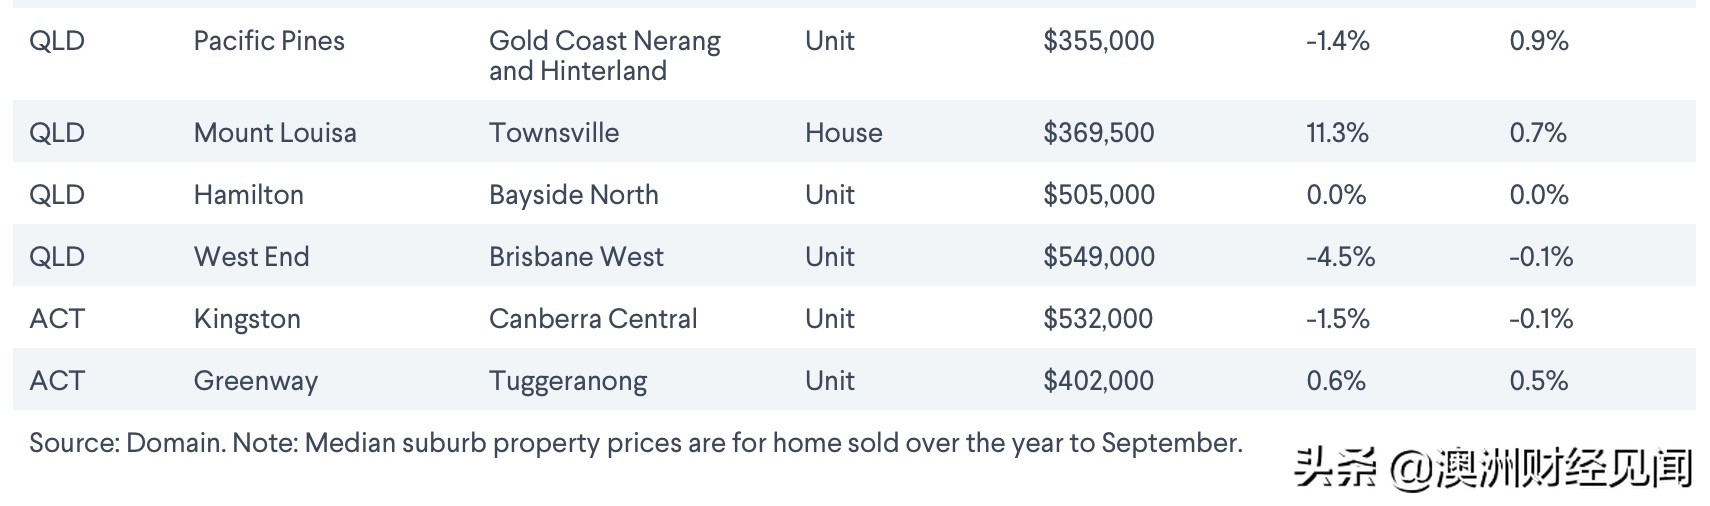 澳洲多地房价跌回2015年 抄底的时间到了吗？